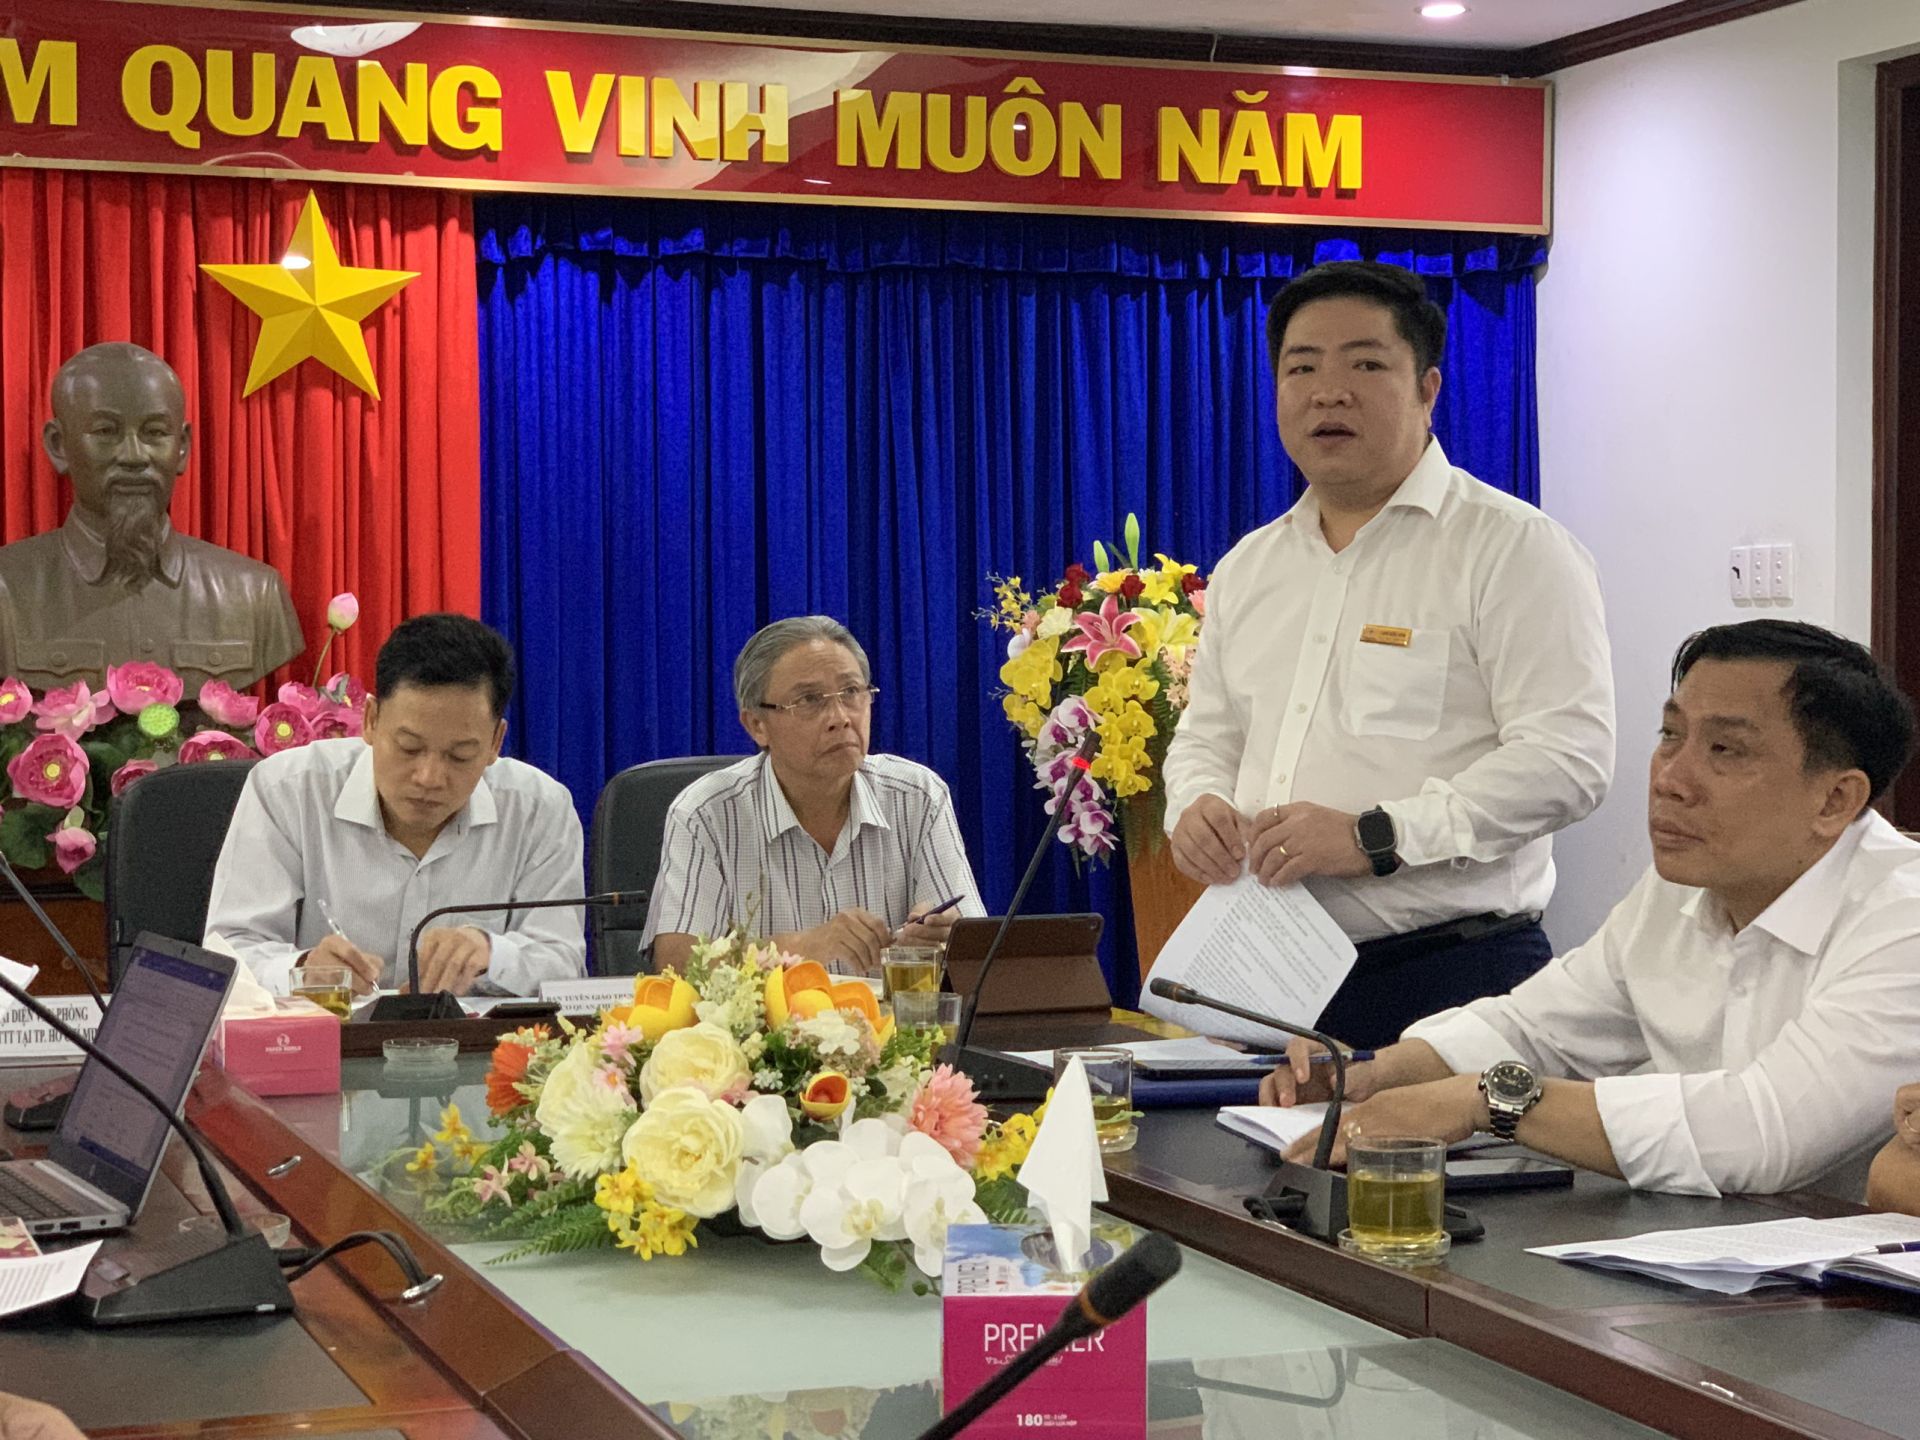 Ông Luân Quốc Hưng - Phó Giám đốc Tổng Công ty Điện lực TP.HCM phát biểu tại cuộc họp